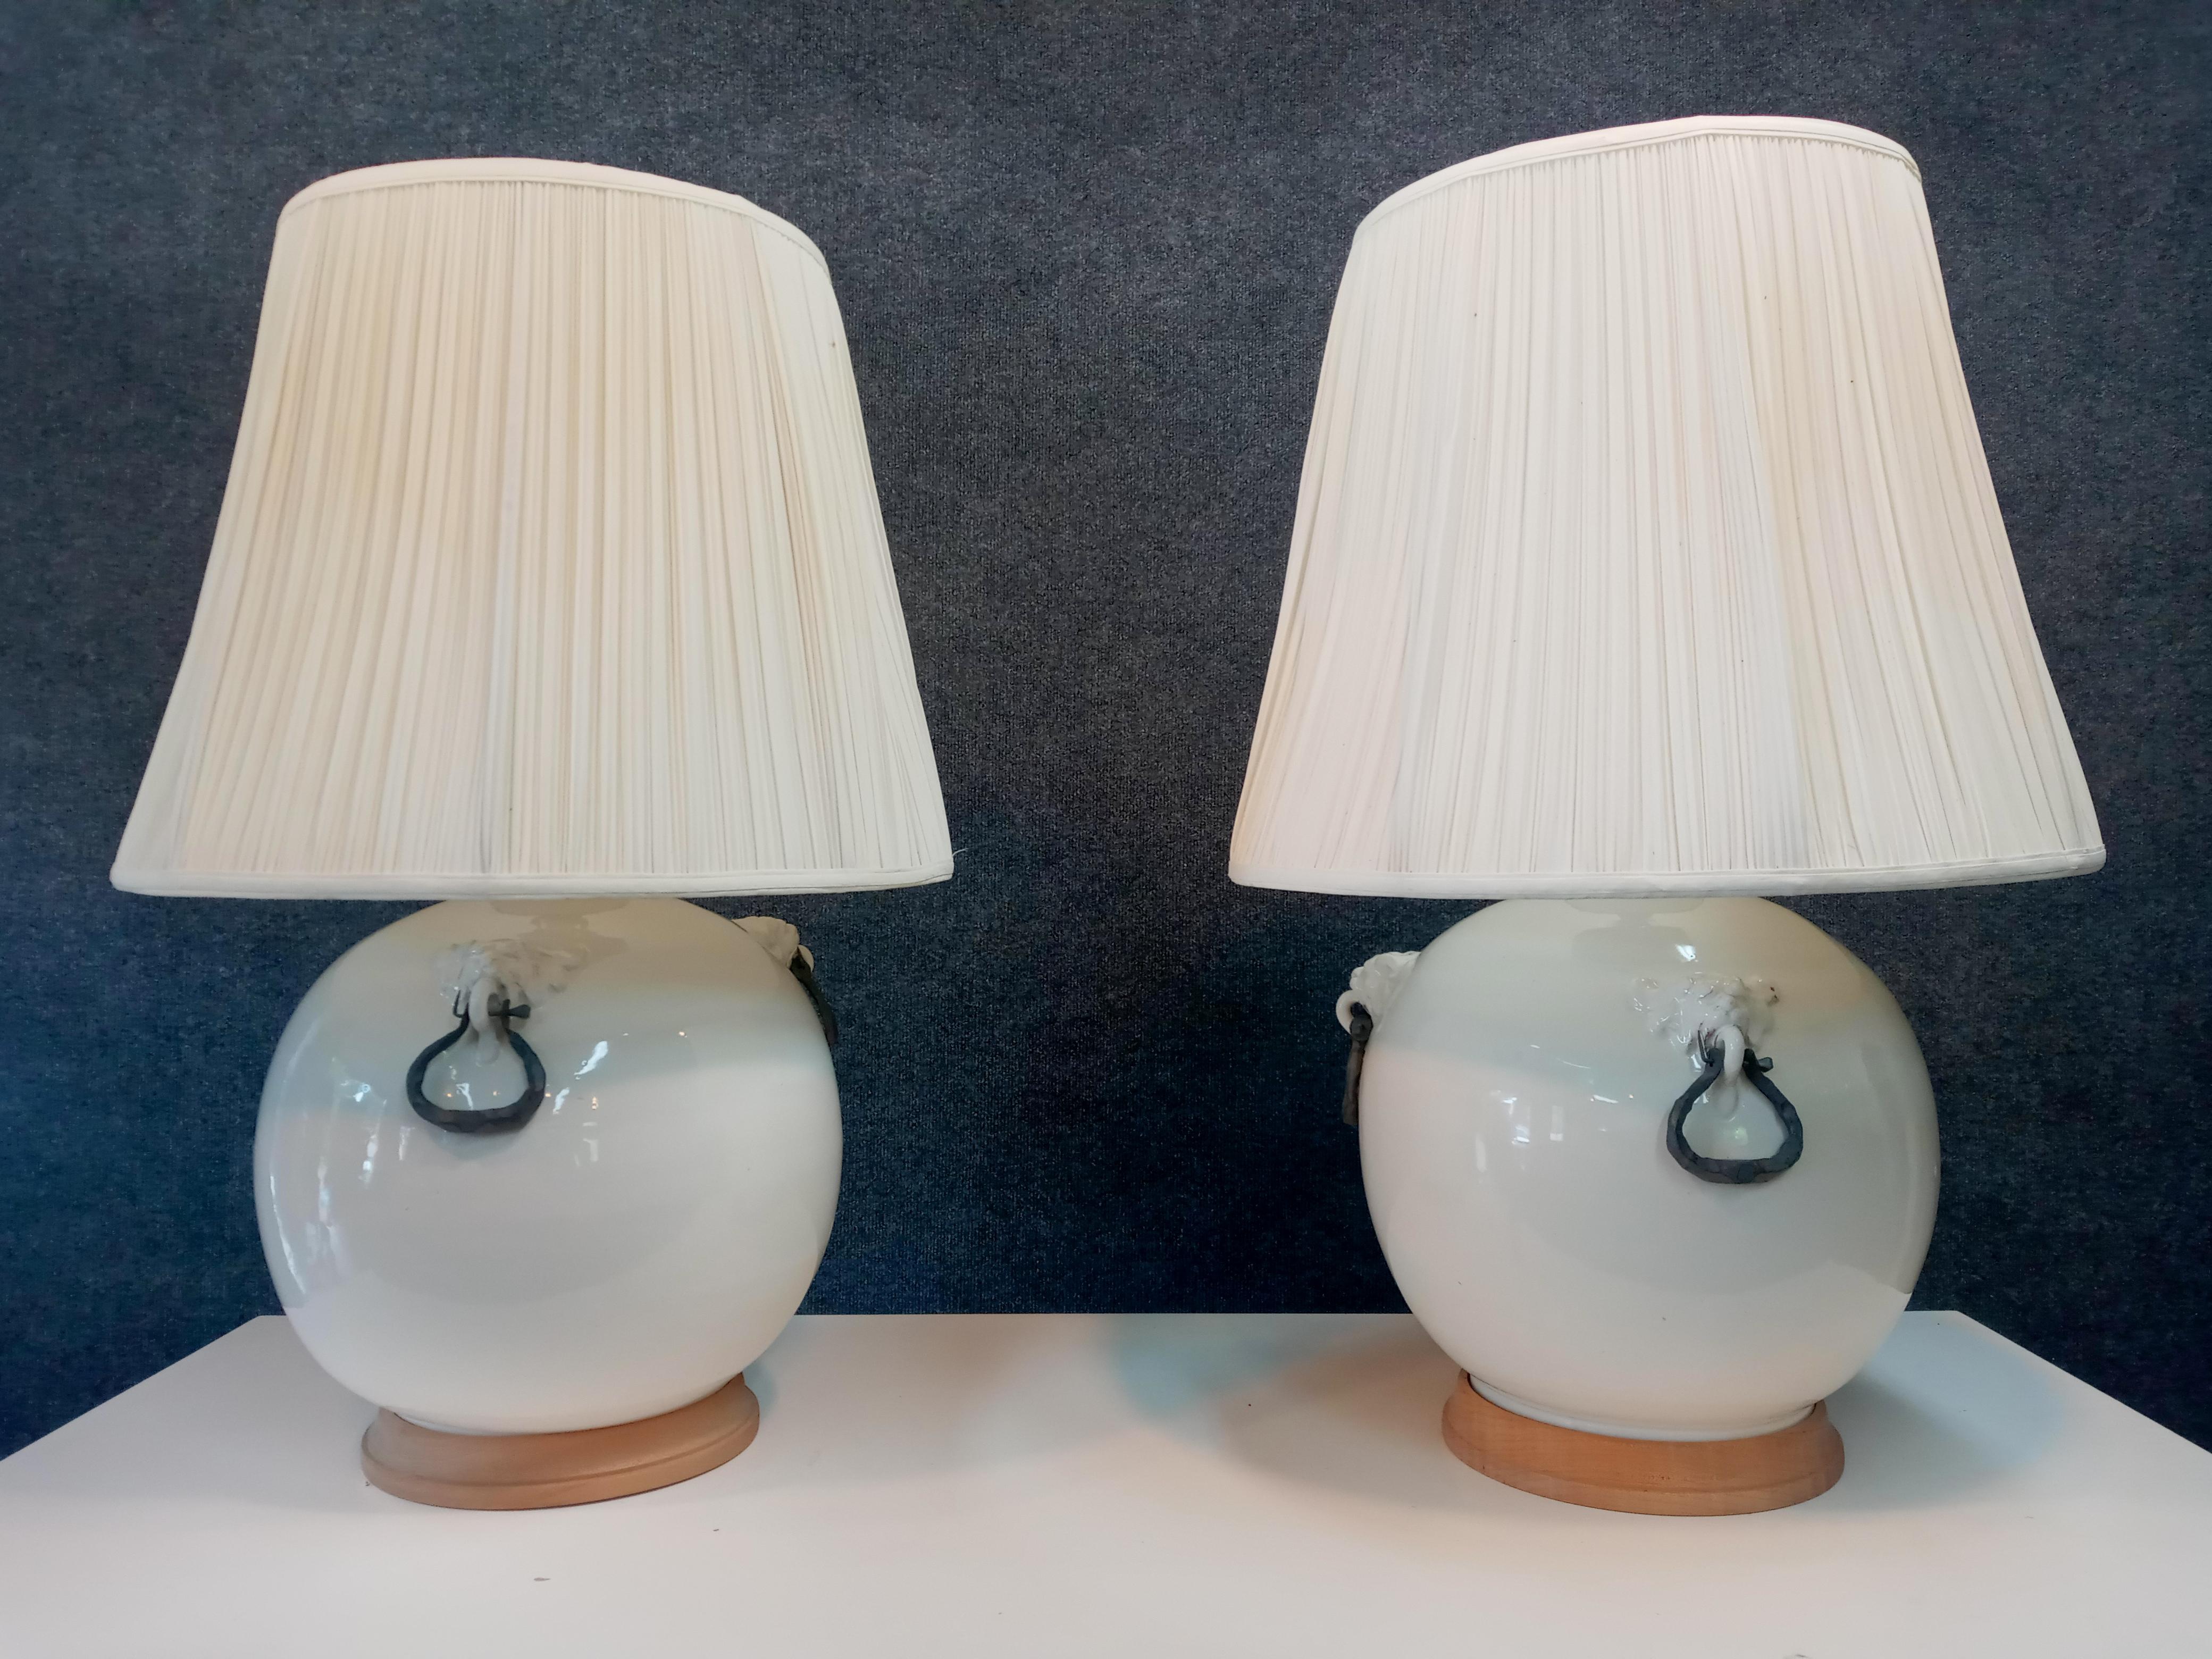 Ein Paar sehr große Vintage-Tischlampen. Die glasierten Keramikkörper haben Metallfassungen, einen gedrechselten Holzfuß, eine einzelne Messingfassung und originale Leinenschirme. 